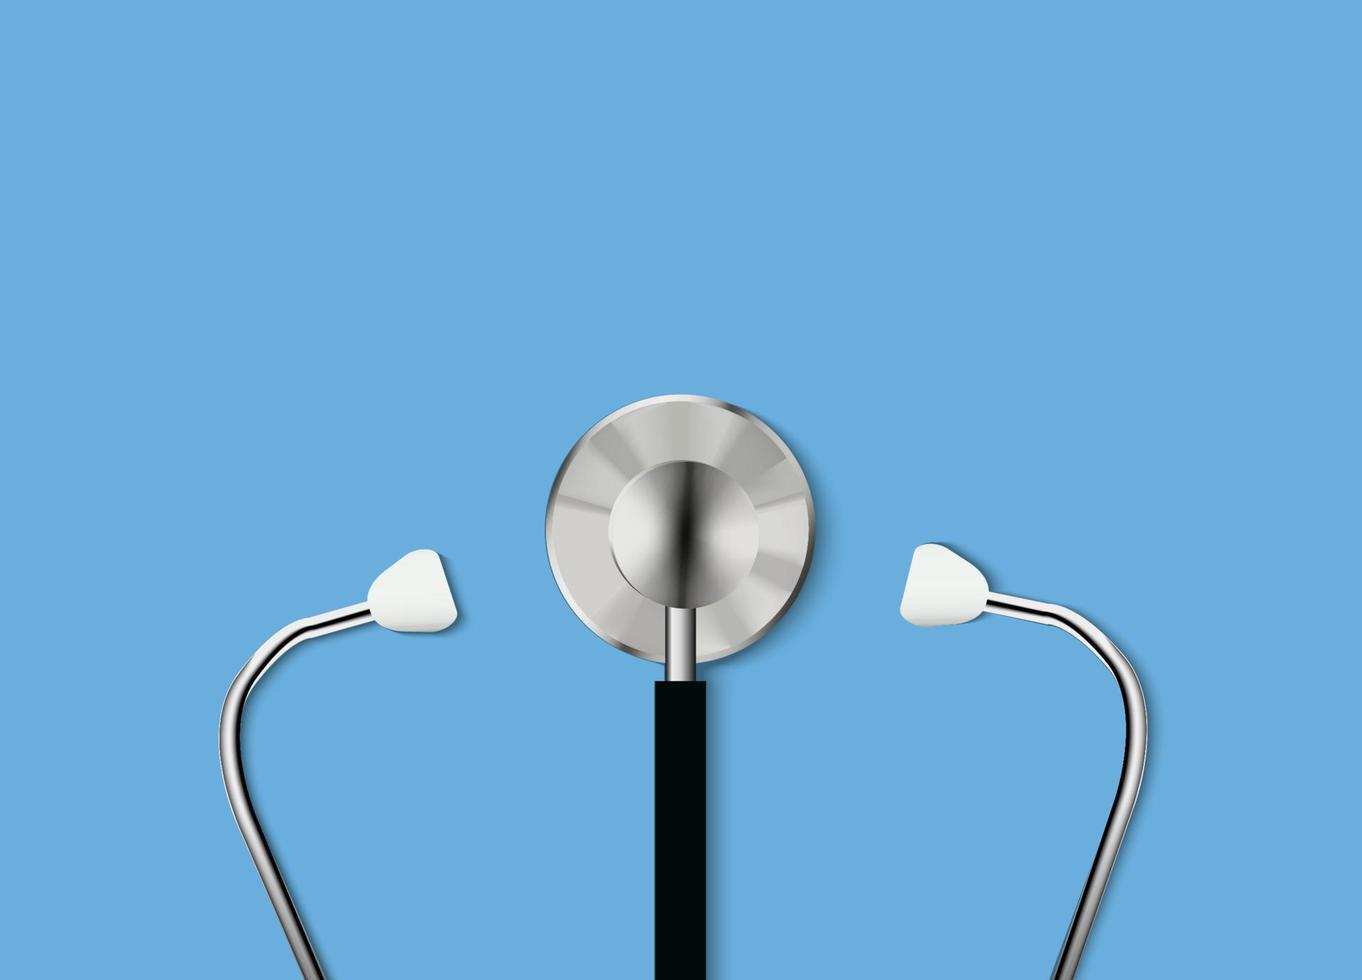 Stéthoscope 3D. instrument médical permettant d'écouter l'action du cœur ou de la respiration, comportant généralement un petit résonateur en forme de disque placé contre la poitrine et deux tubes reliés à des oreillettes vecteur